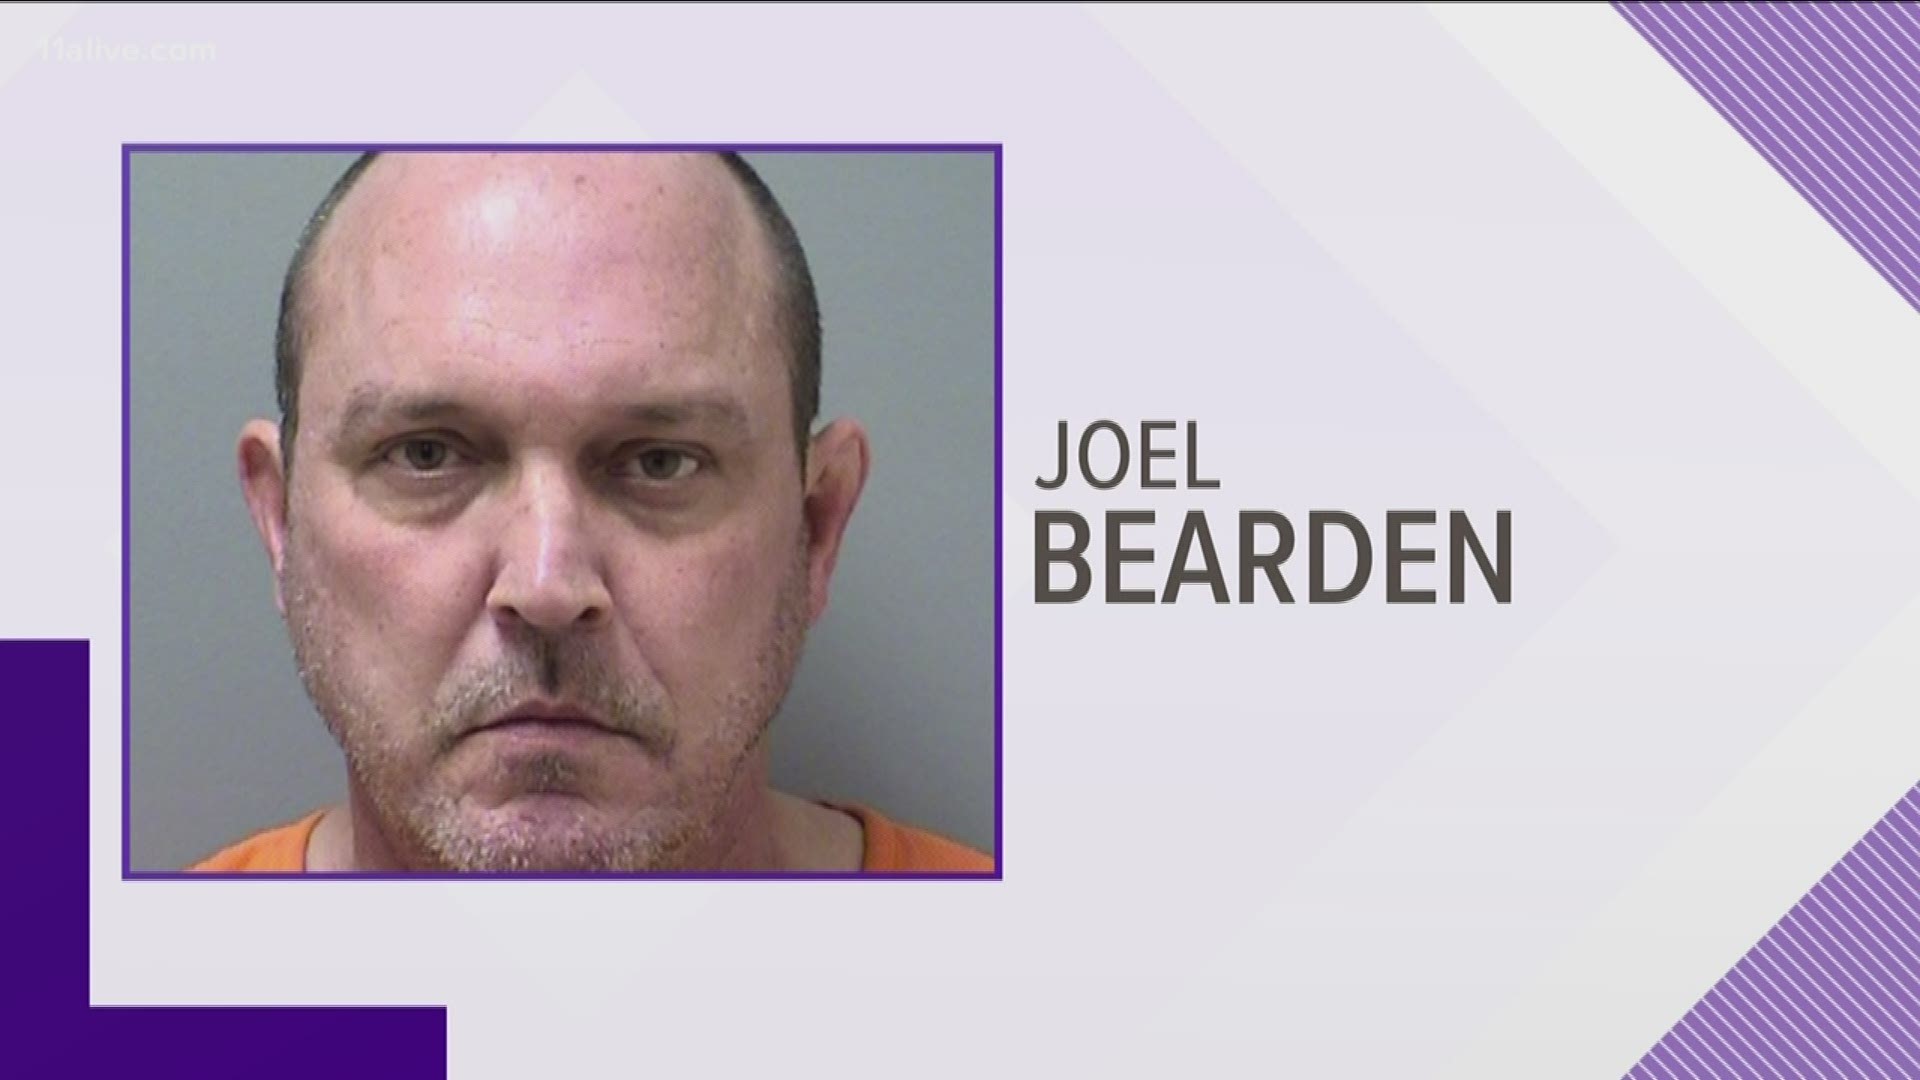 Joel Bearden was arrested in 2017.